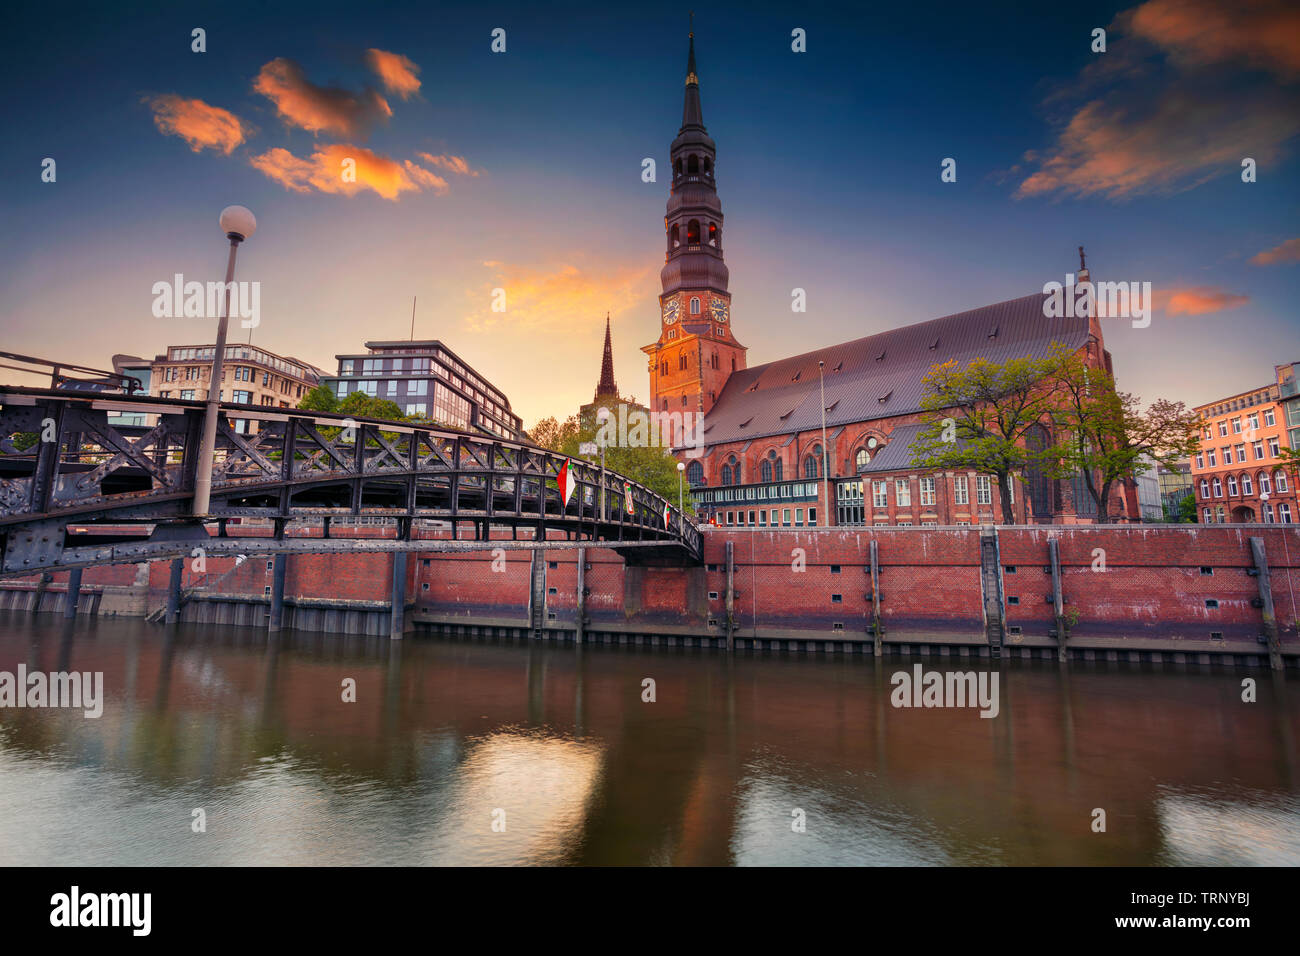 Amburgo, Germania. Immagine del paesaggio urbano di Amburgo, Speicherstadt durante il tramonto. Foto Stock